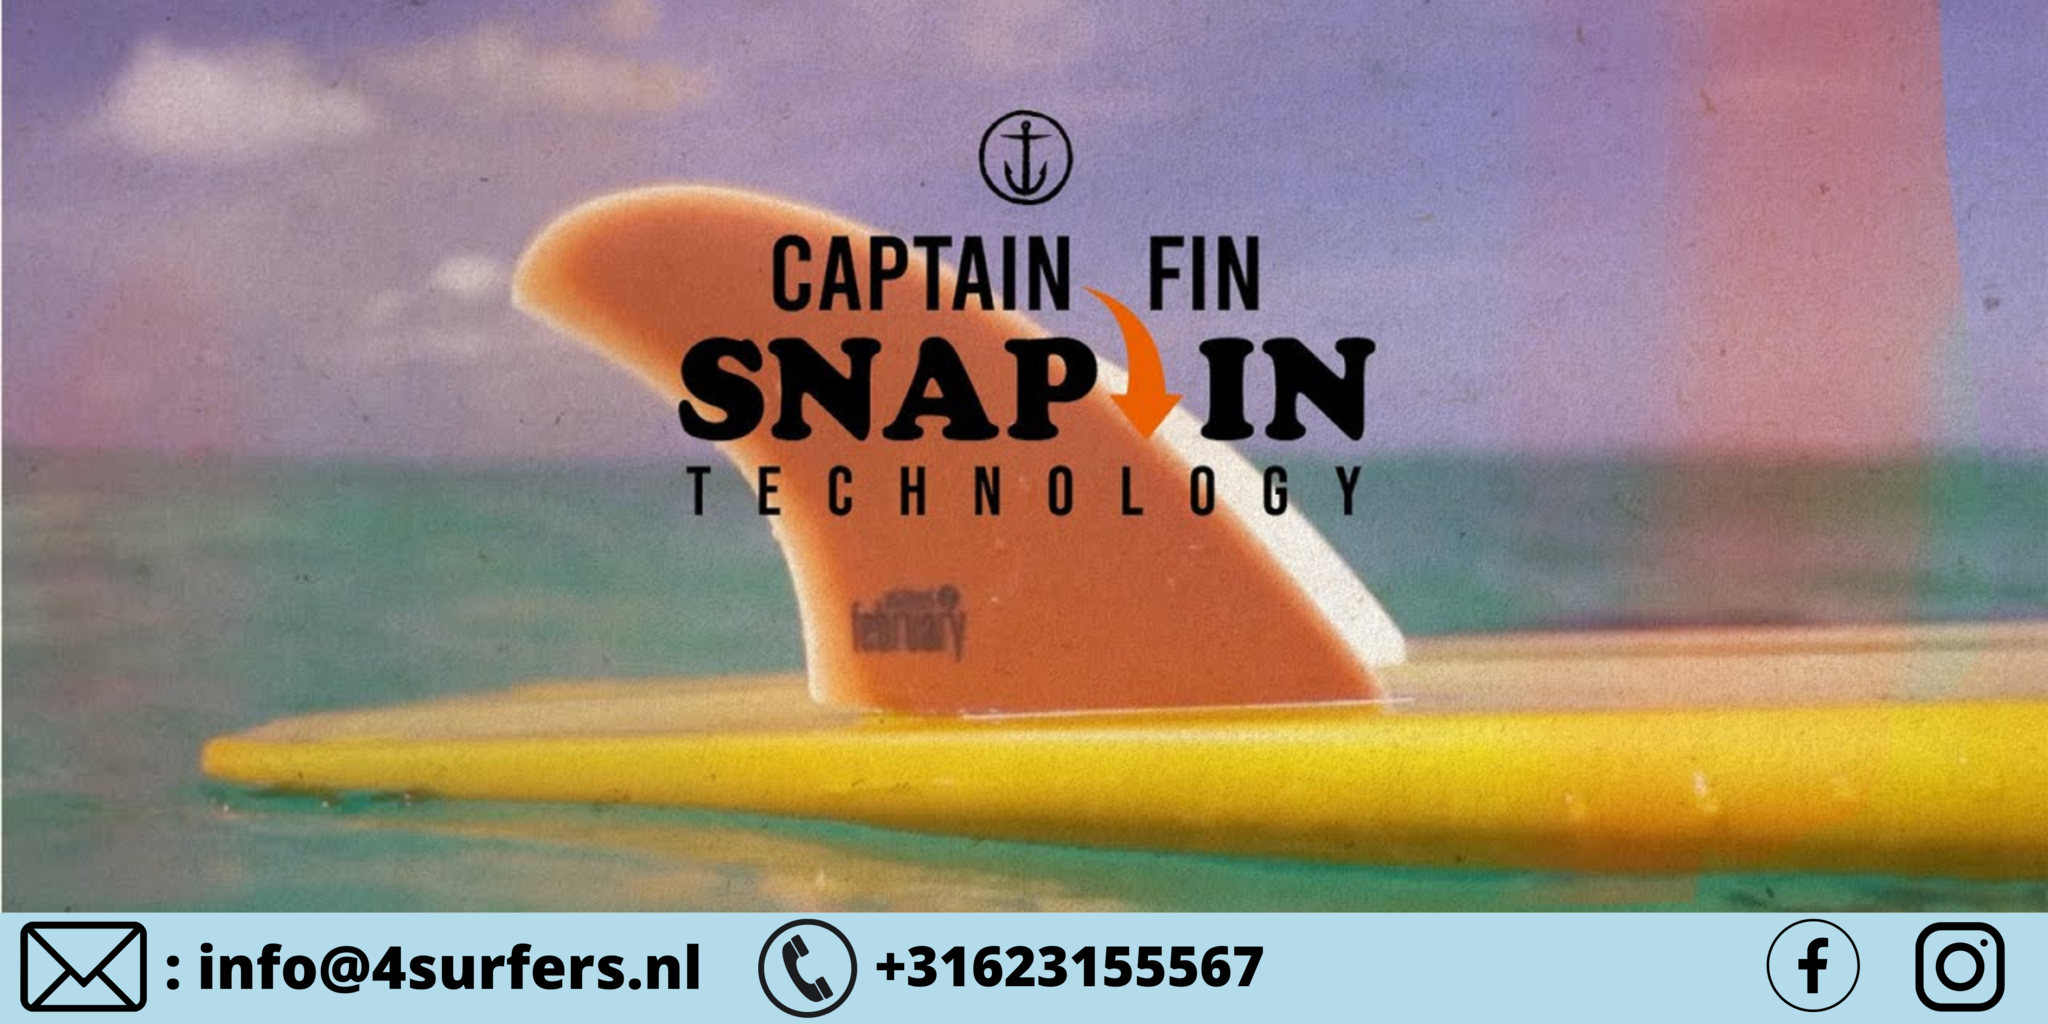 Captain Fin